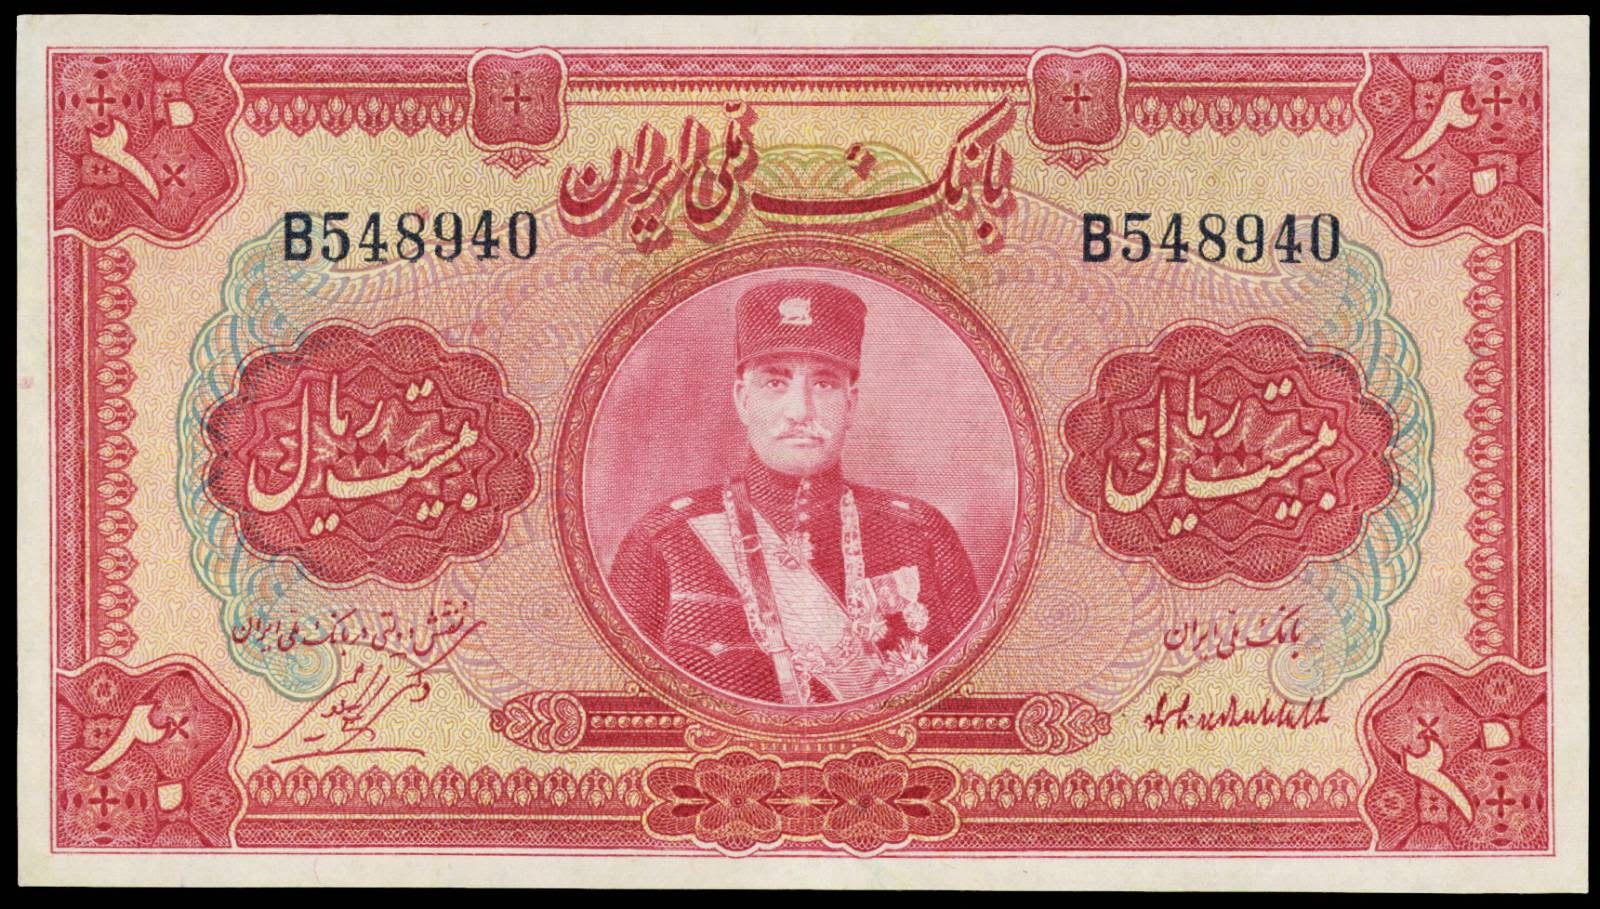 Iran banknotes 20 Rials bank note 1932 Reza Shah Pahlavi